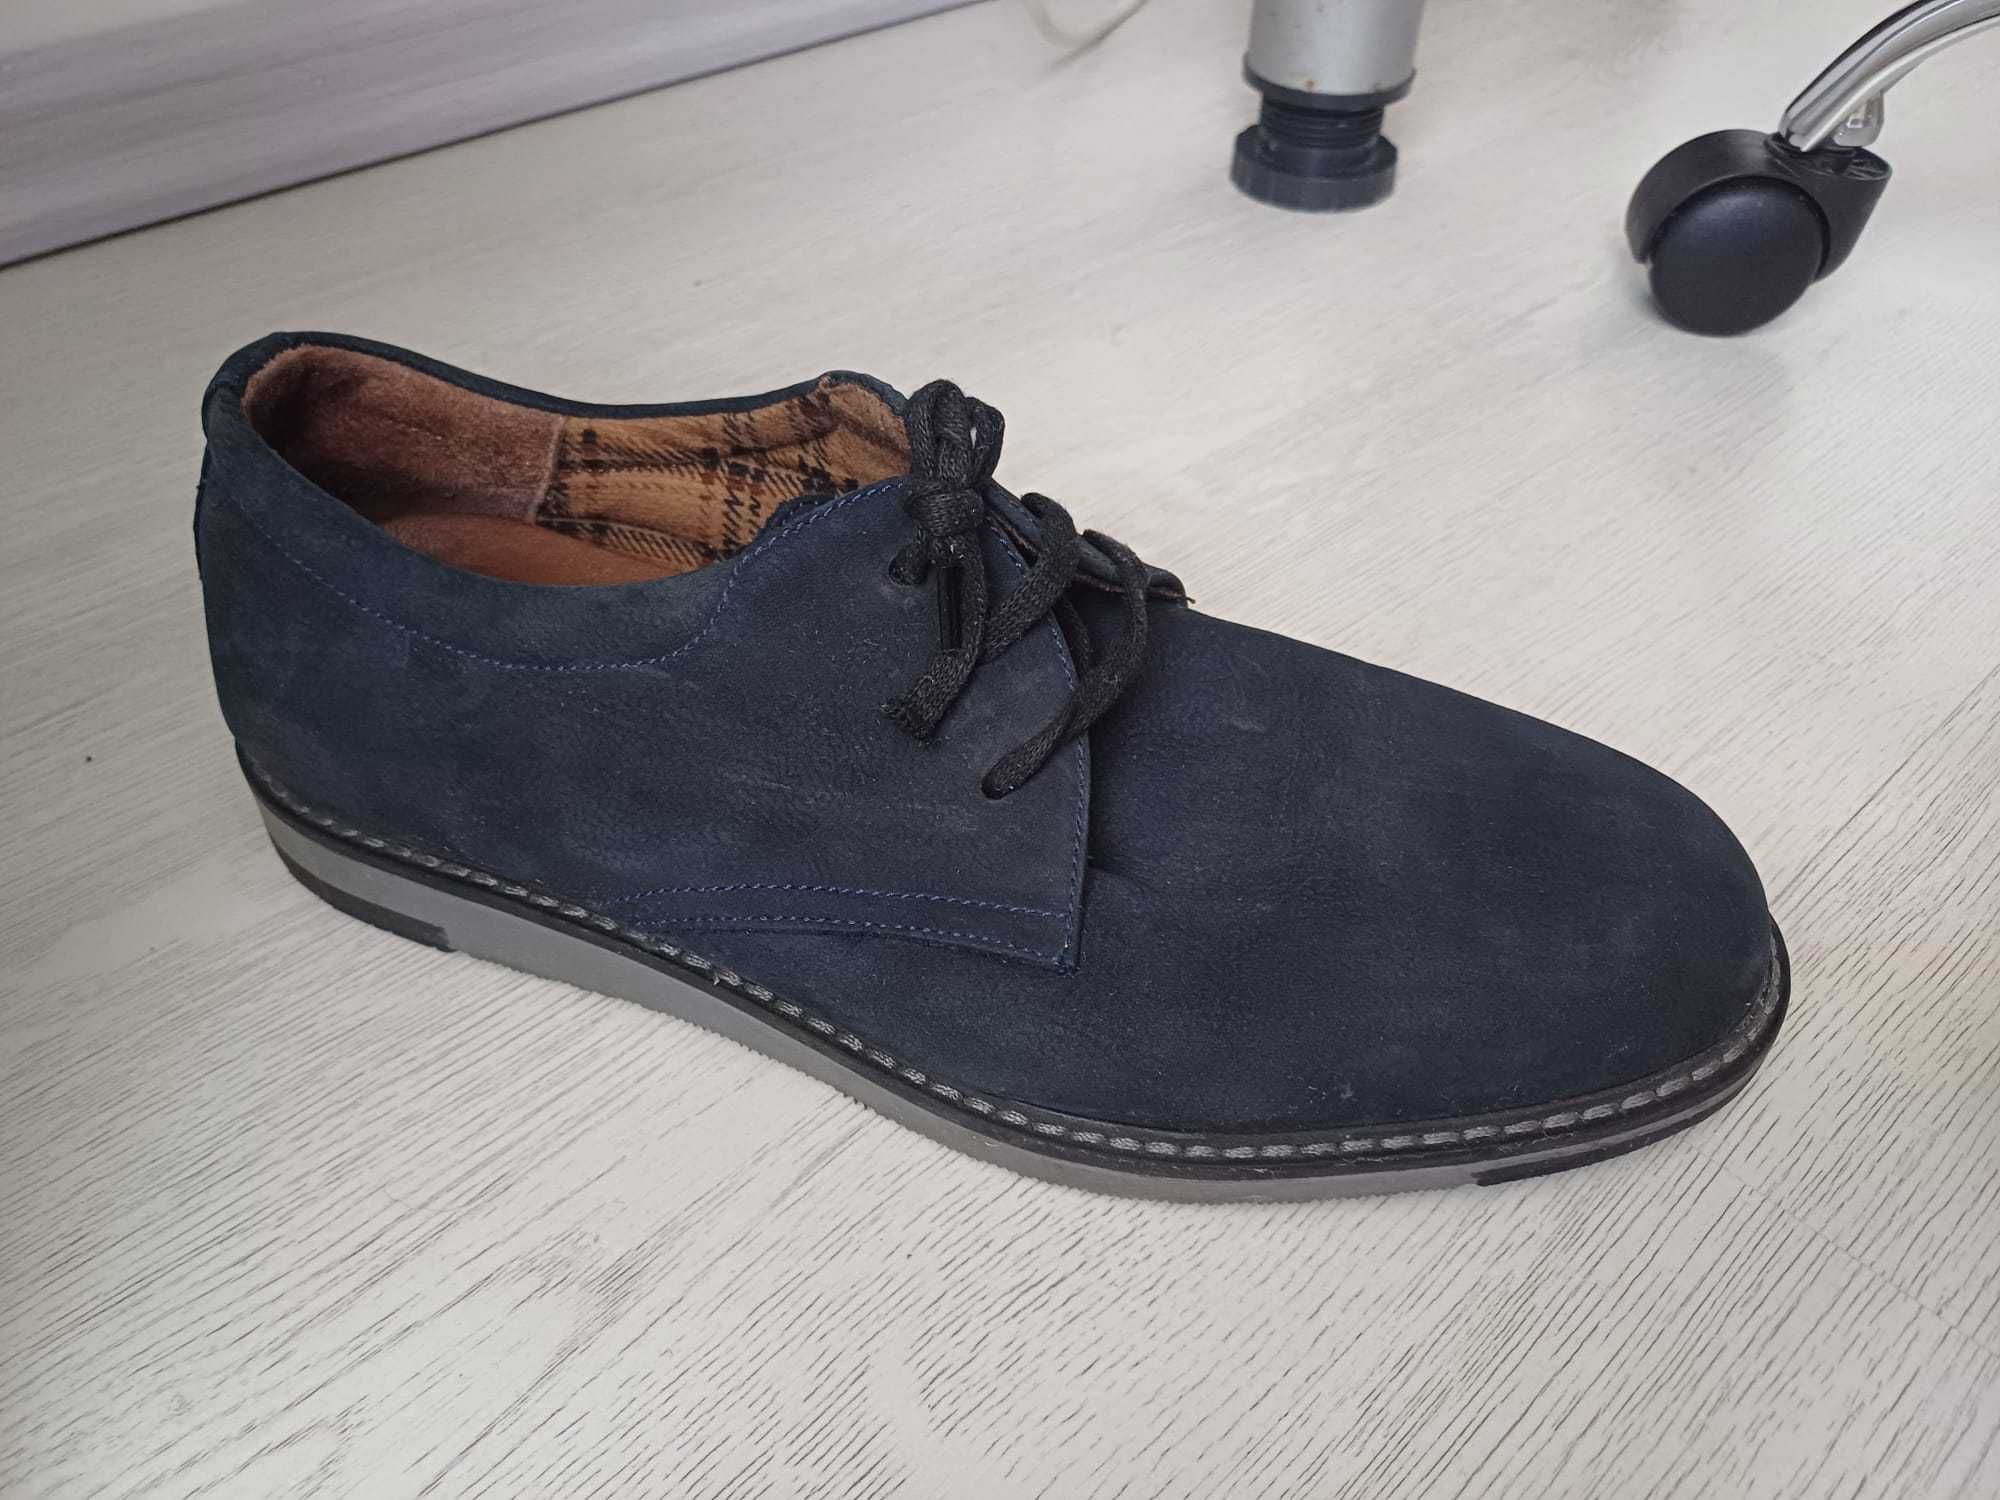 Pantof tip casual,piele intoarsa,blue-marin,aproape noi